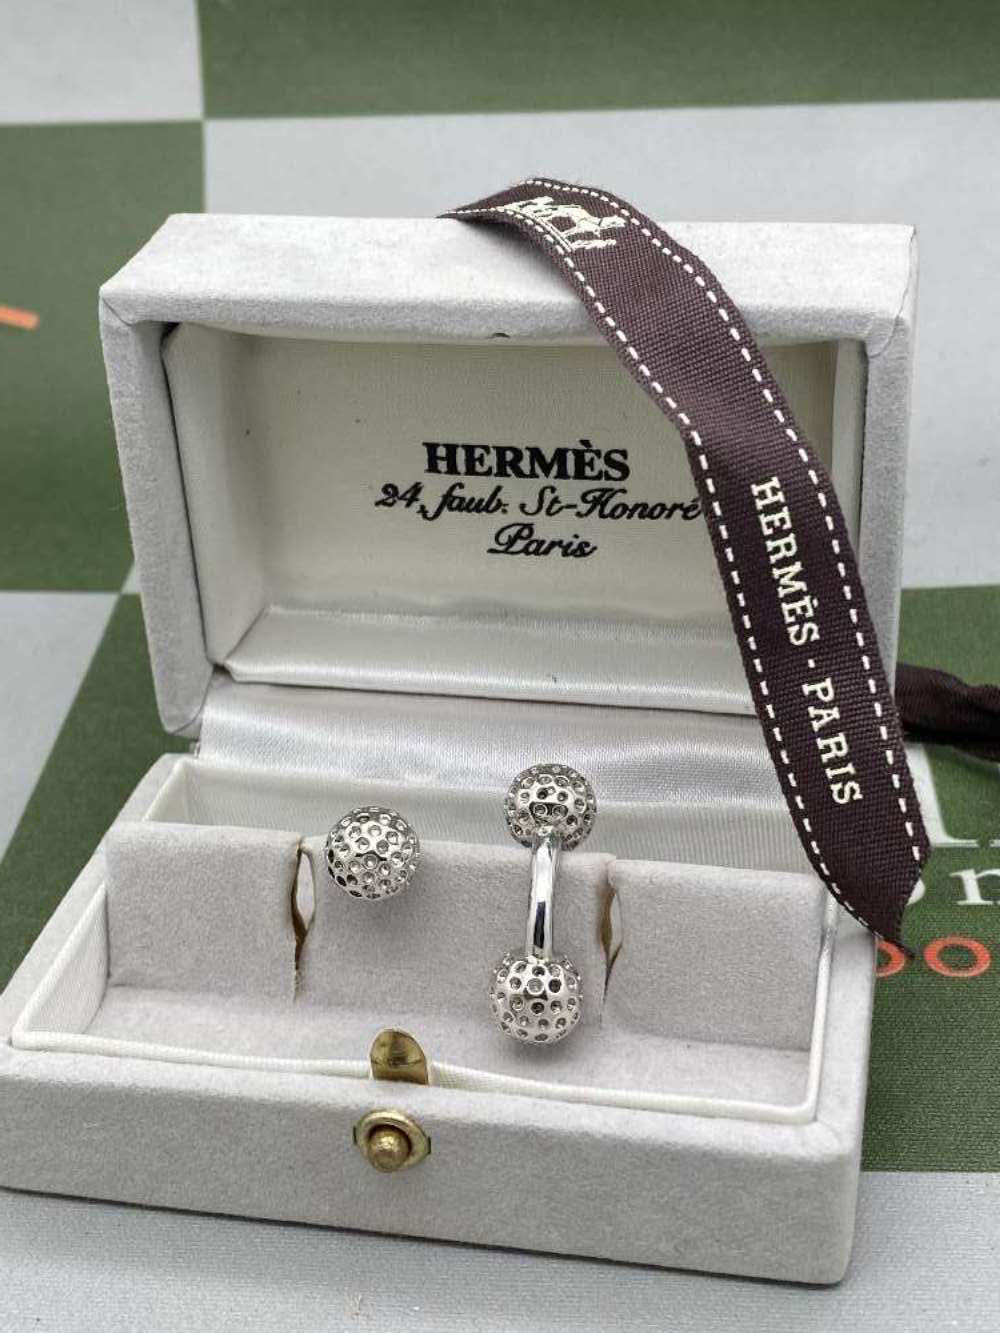 Hermes Paris Vintage Cufflinks Hallmarked 925 Solid Silver Golf Ball Edition